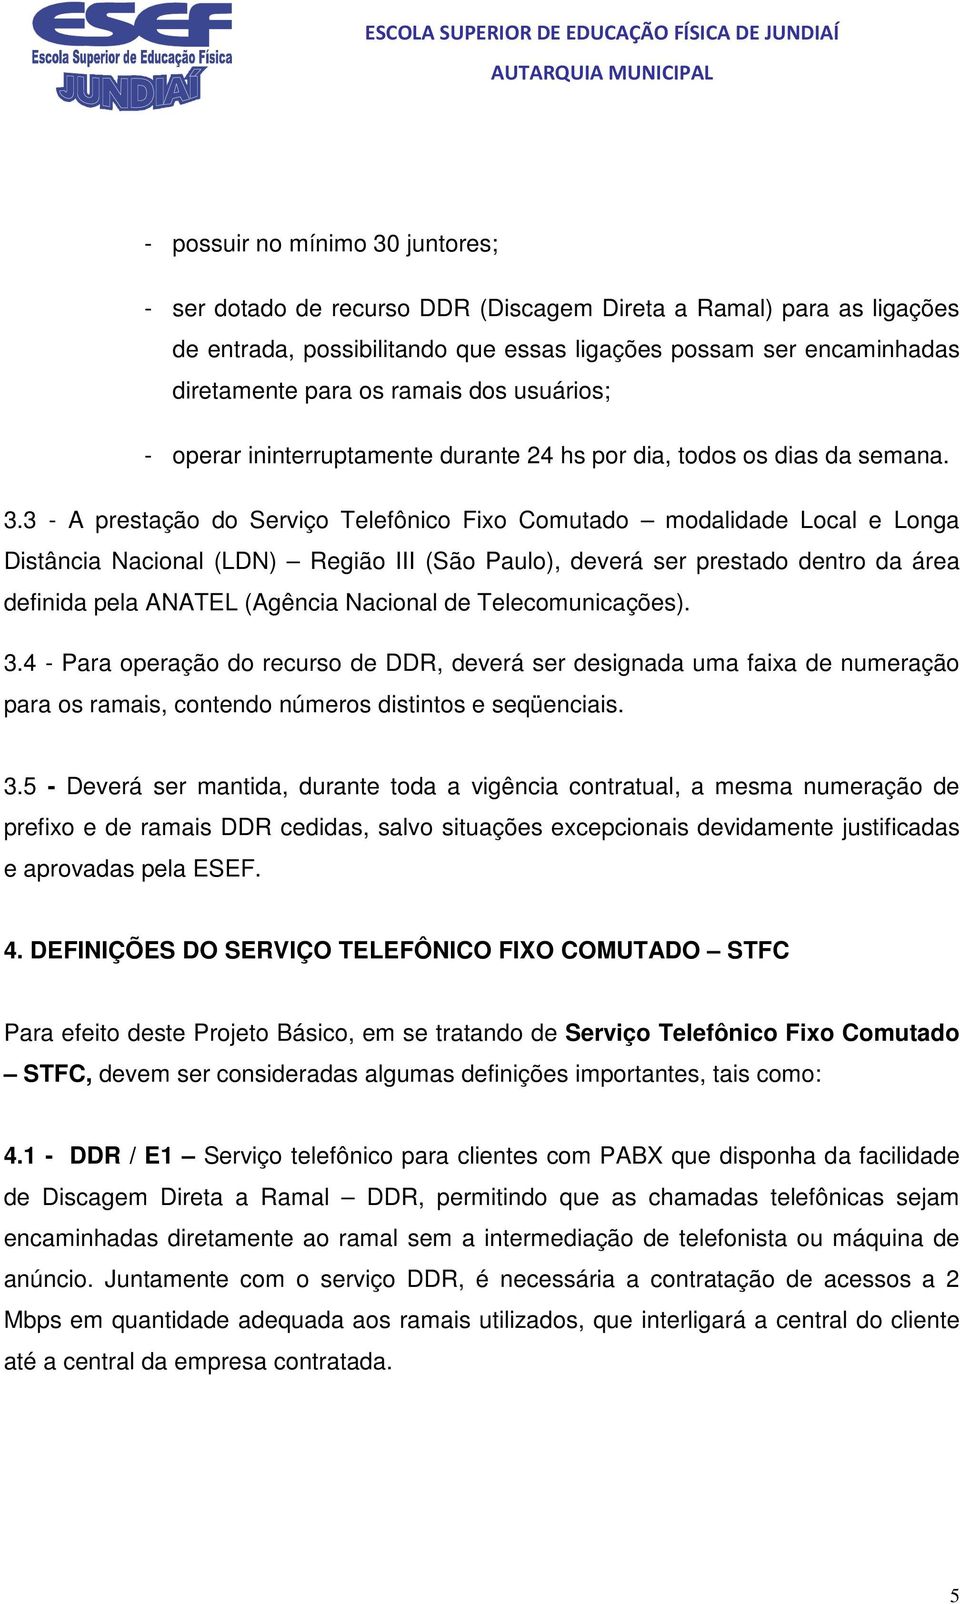 3 - A prestação do Serviço Telefônico Fixo Comutado modalidade Local e Longa Distância Nacional (LDN) Região III (São Paulo), deverá ser prestado dentro da área definida pela ANATEL (Agência Nacional